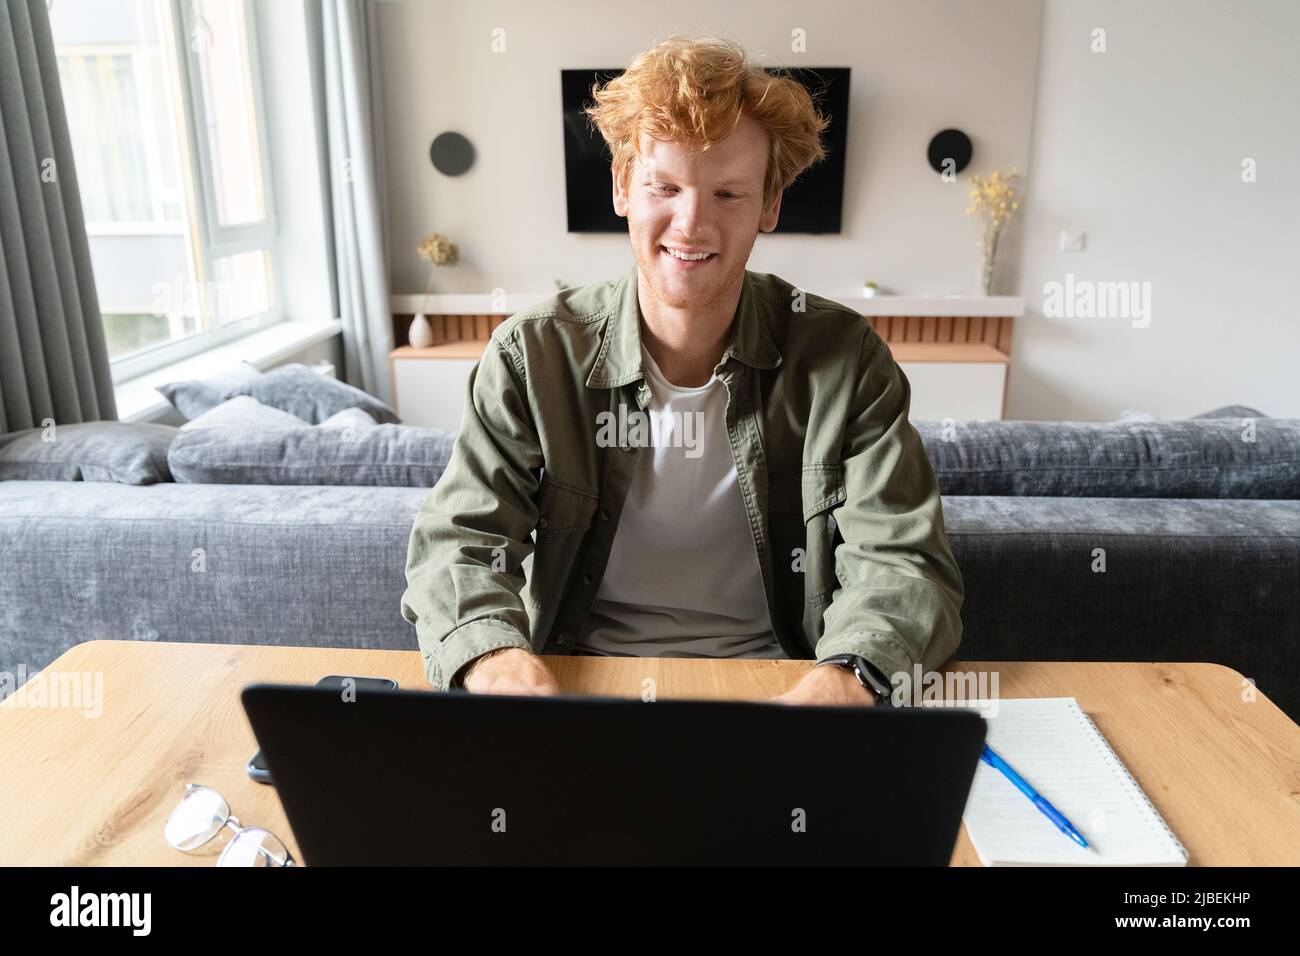 Jeune homme britannique étudiant en ligne ou ayant des conférences vidéo d'affaires sur ordinateur portable Banque D'Images